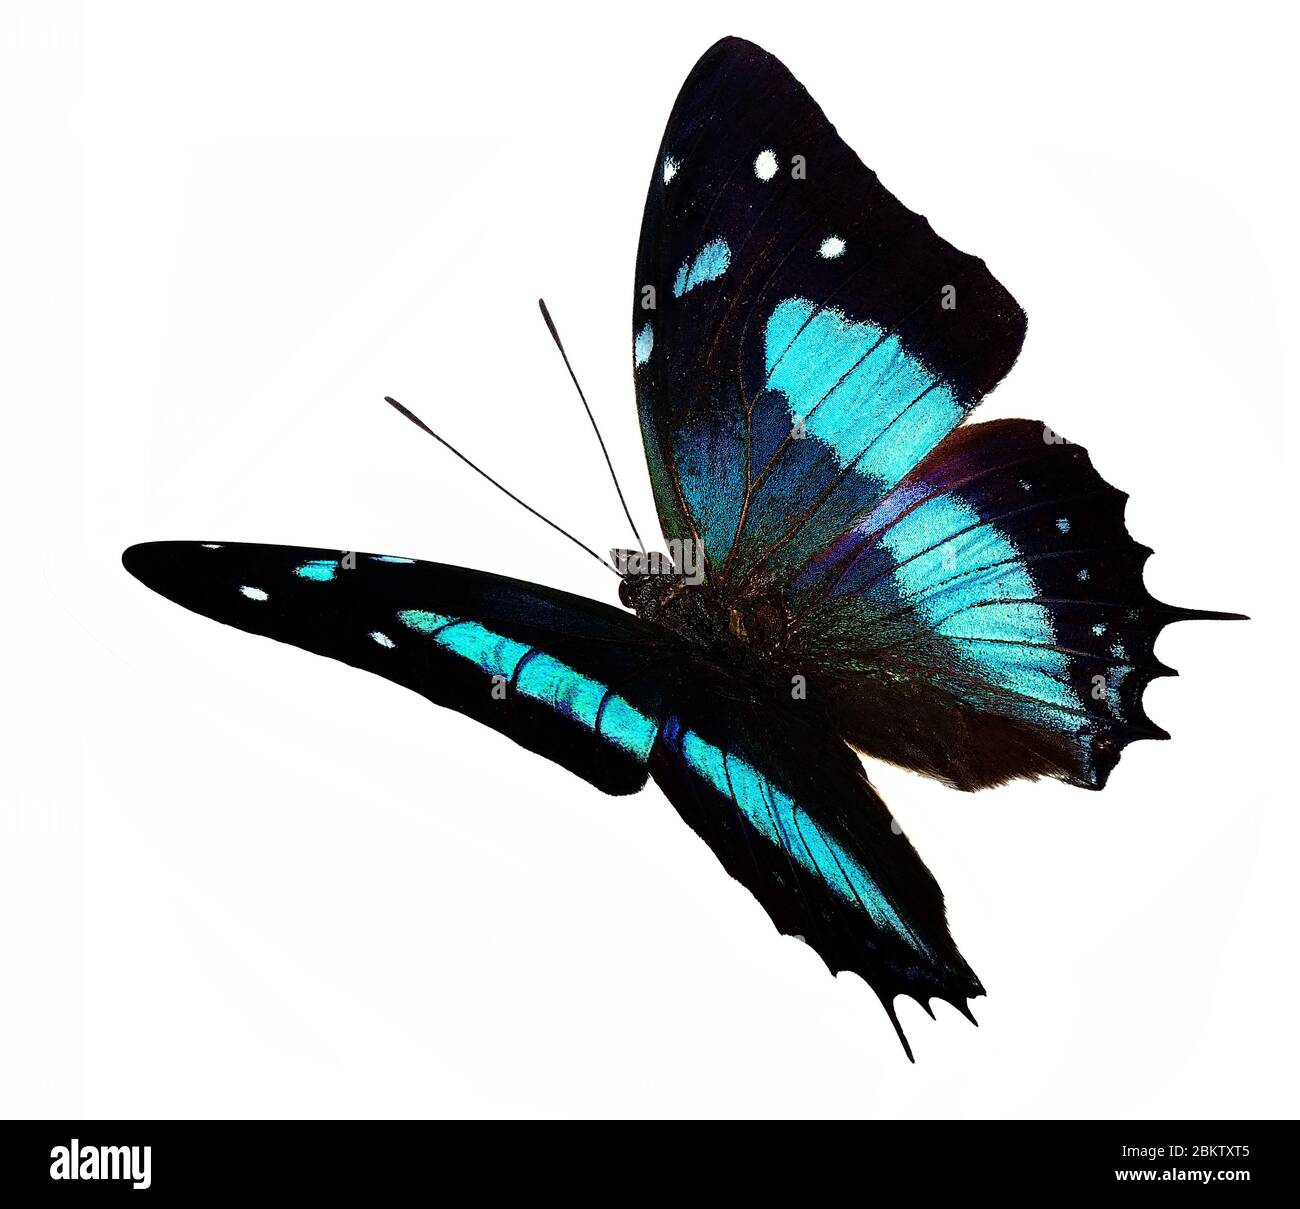 Mariposa negra y azul (Baeotus aeilus) en vuelo aislada sobre fondo blanco Foto de stock